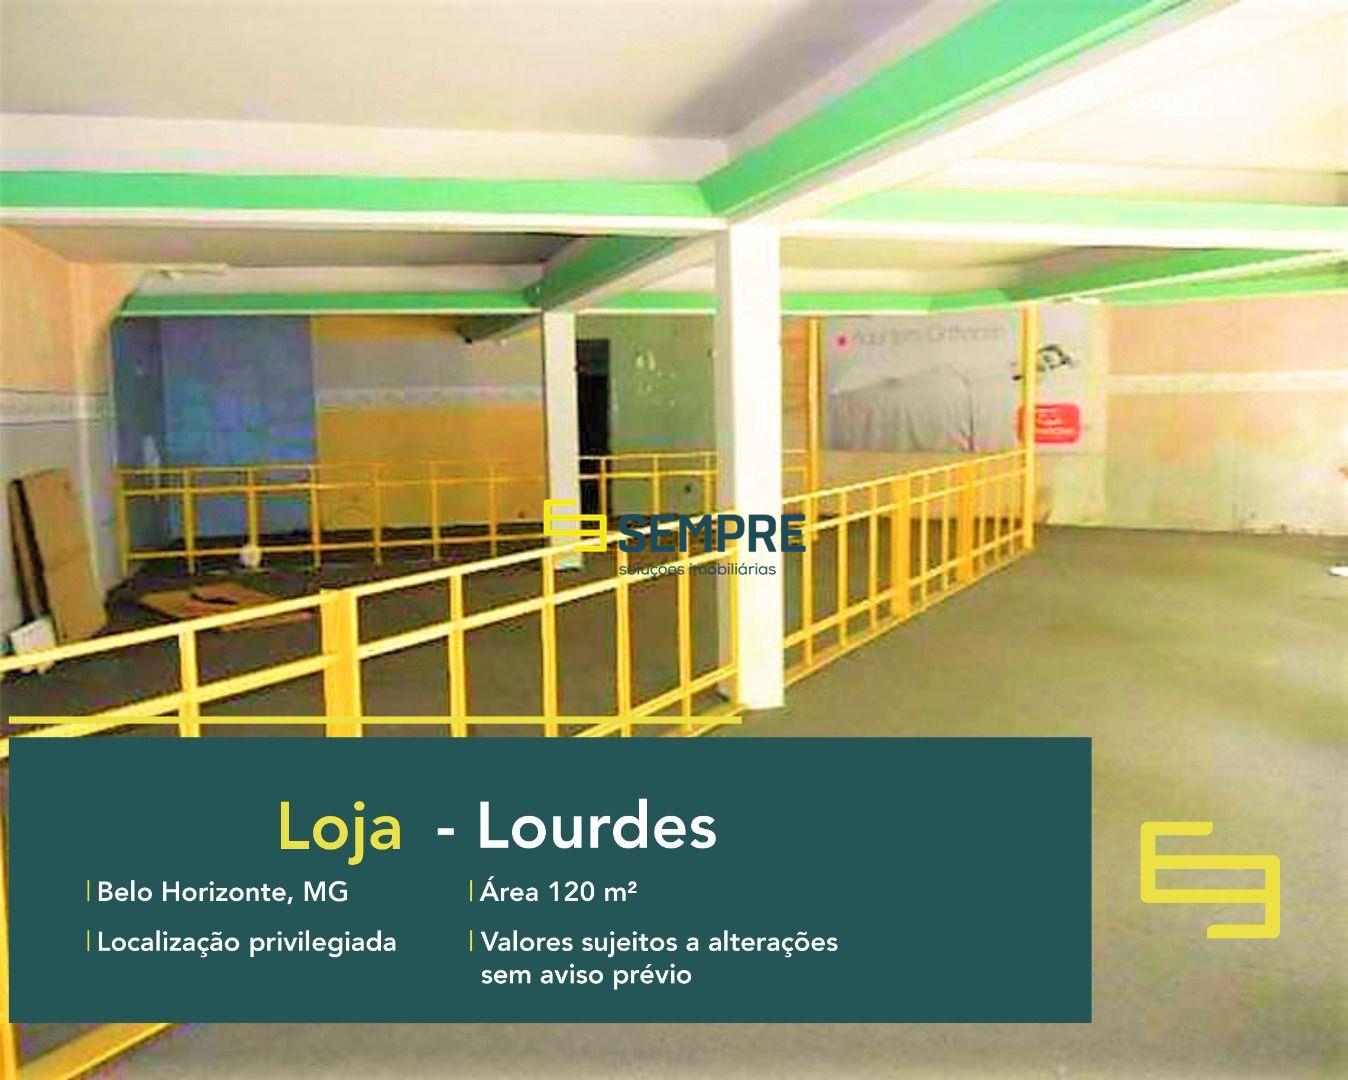 Loja para locação no Lourdes em BH com excelente localização. O Estabelecimento comercial para alugar, conta sobretudo, com área de 120 m².